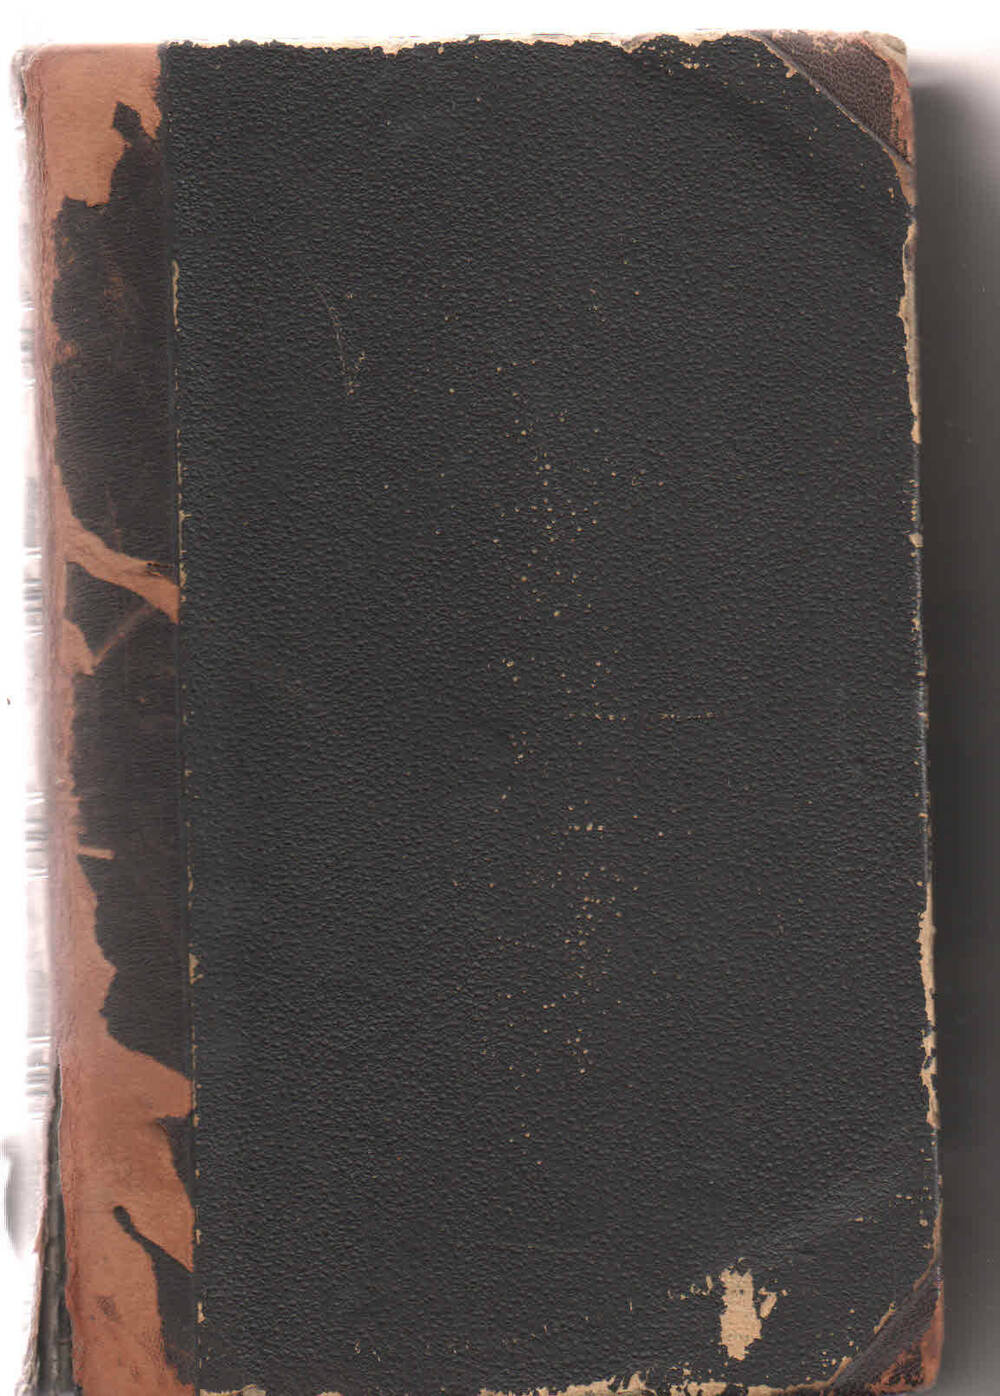 Книга: Гёте. Сочинения. I т. 1888. - 315 с.